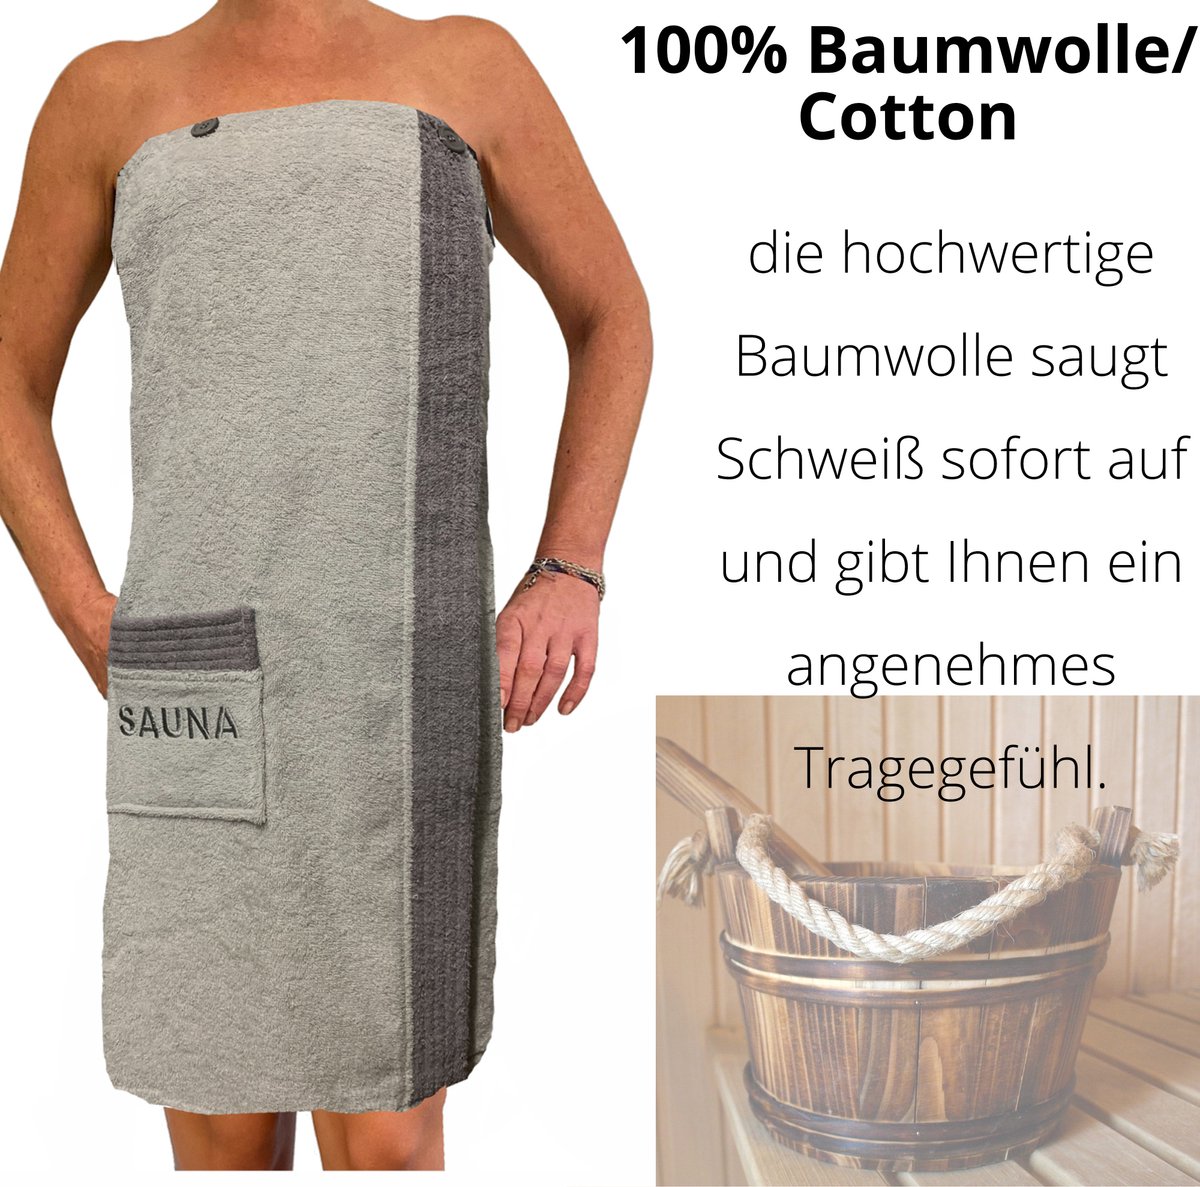 JEMIDI sauna handdoek voor hem - Katoenen saunakilt voor mannen - One size - Donkerblauw